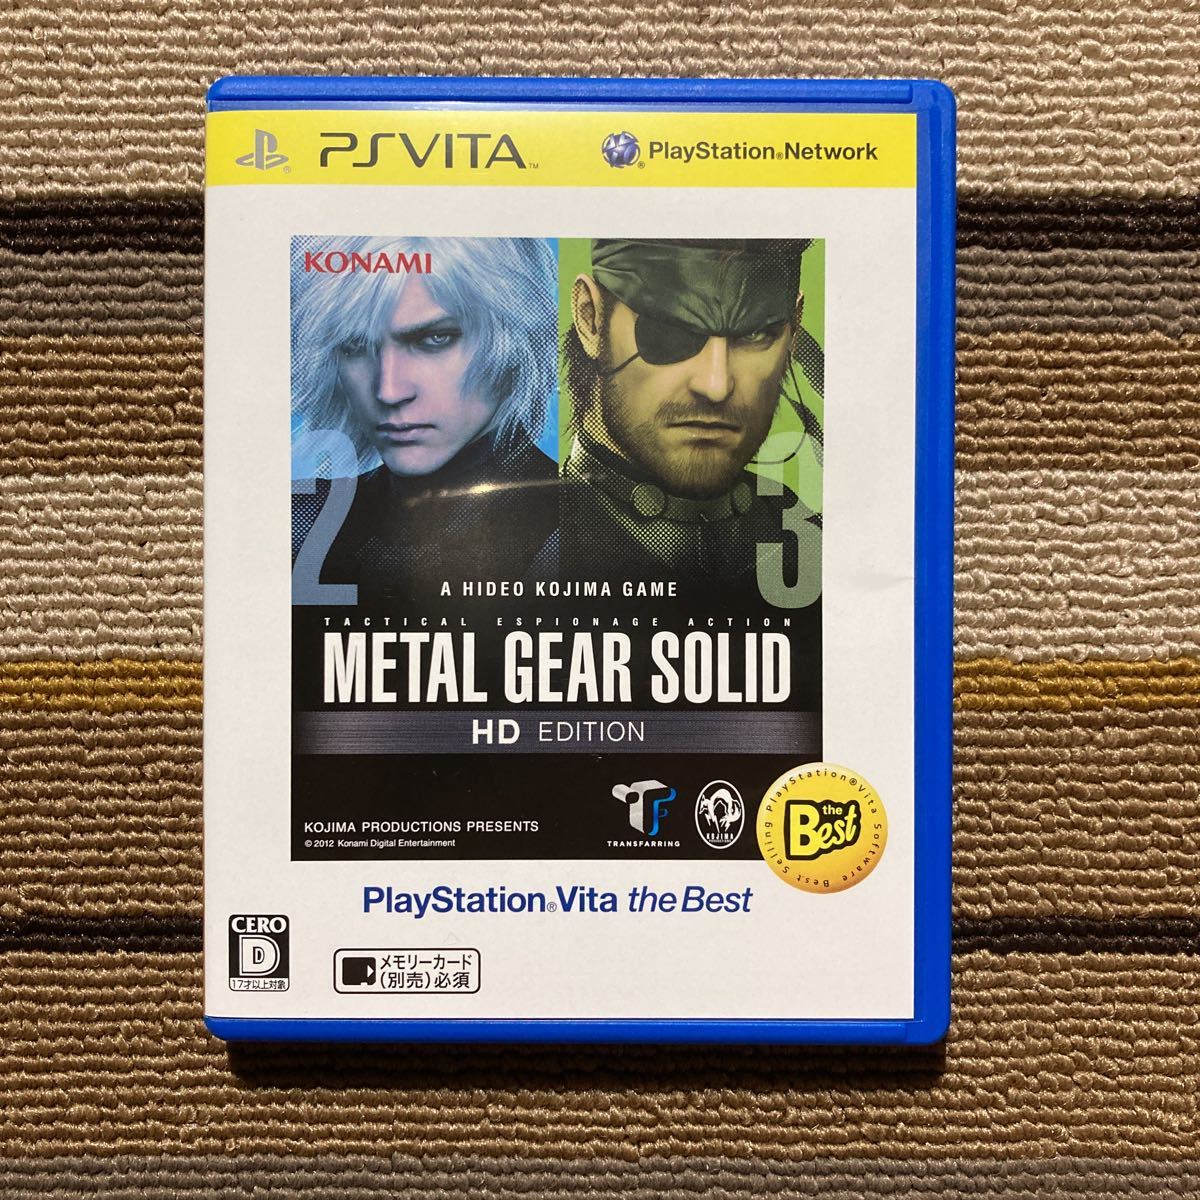 8880円 ついに再販開始 メタルギア ソリッド HD エディション 通常版 ゲームアーカイブス版 メタルギアソリッド ダウンロードコード同梱 - PS3